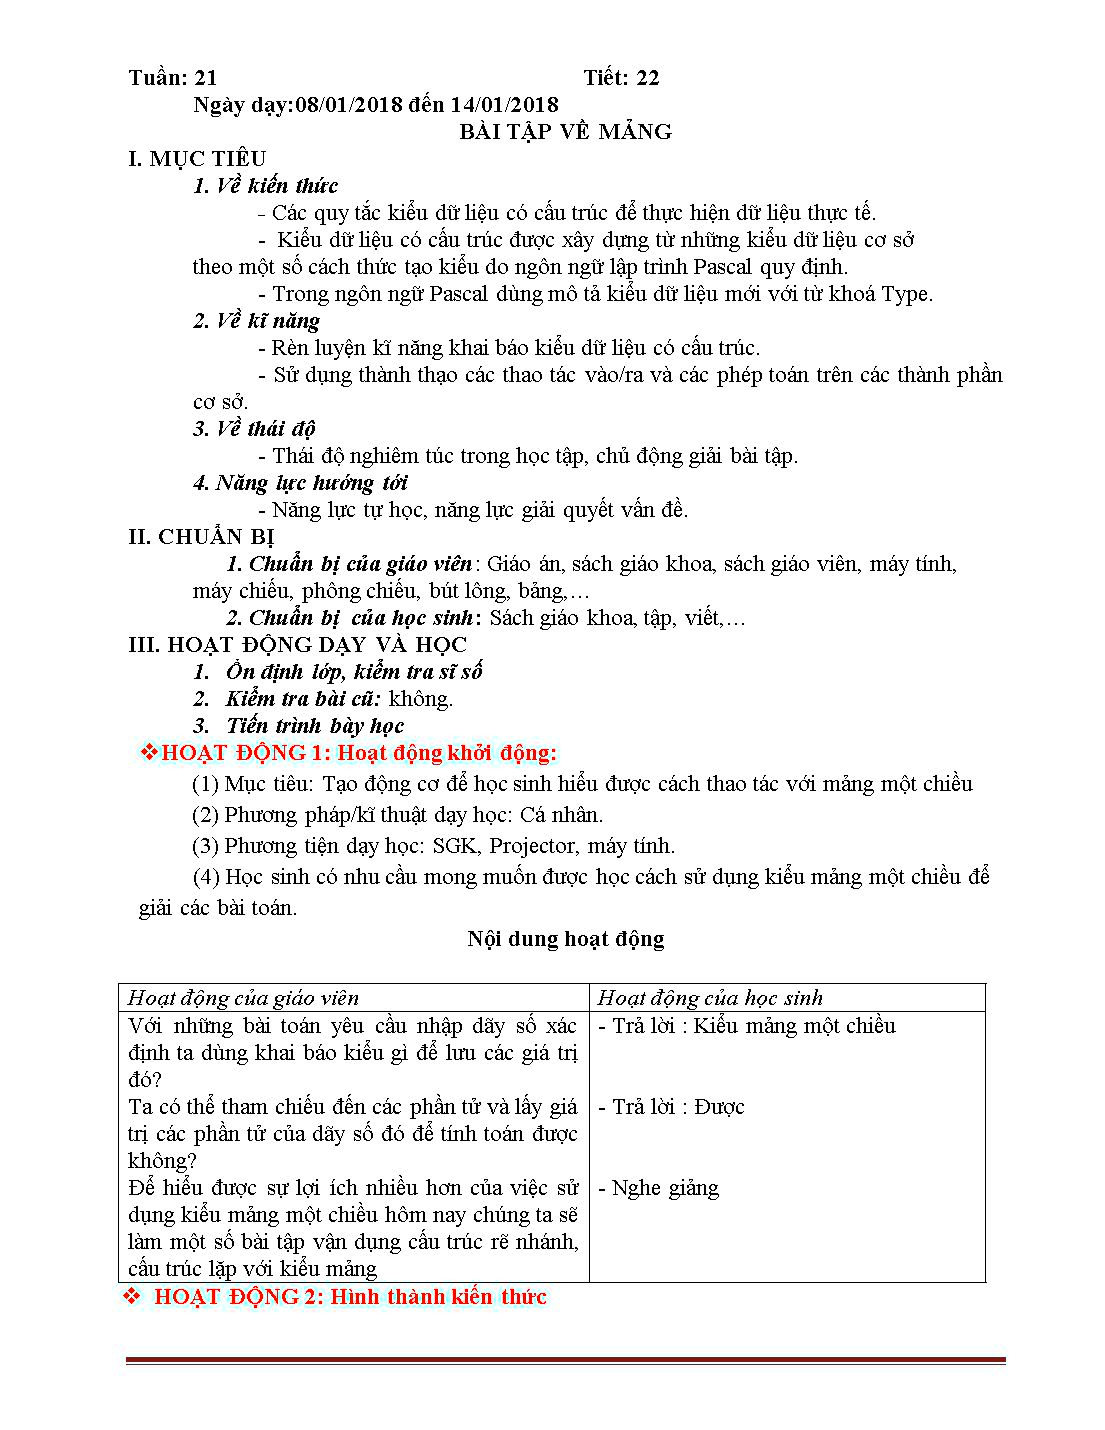 Giáo án học kì 2 môn Tin học Lớp 11 trang 10